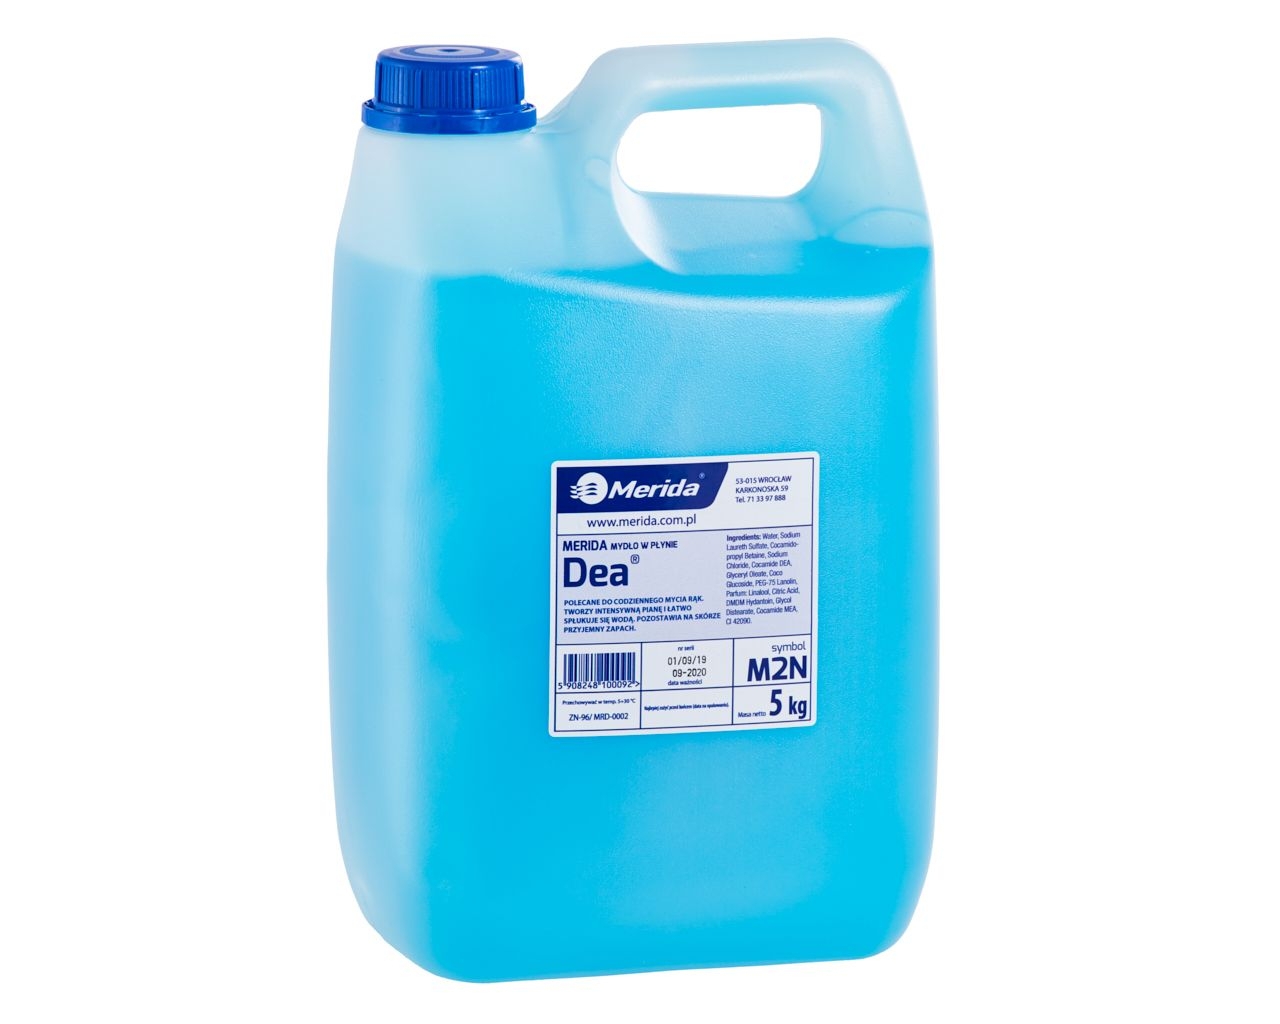 Mydło w płynie MERIDA DEA, niebieskie 5 kg, zapach imperial fresh